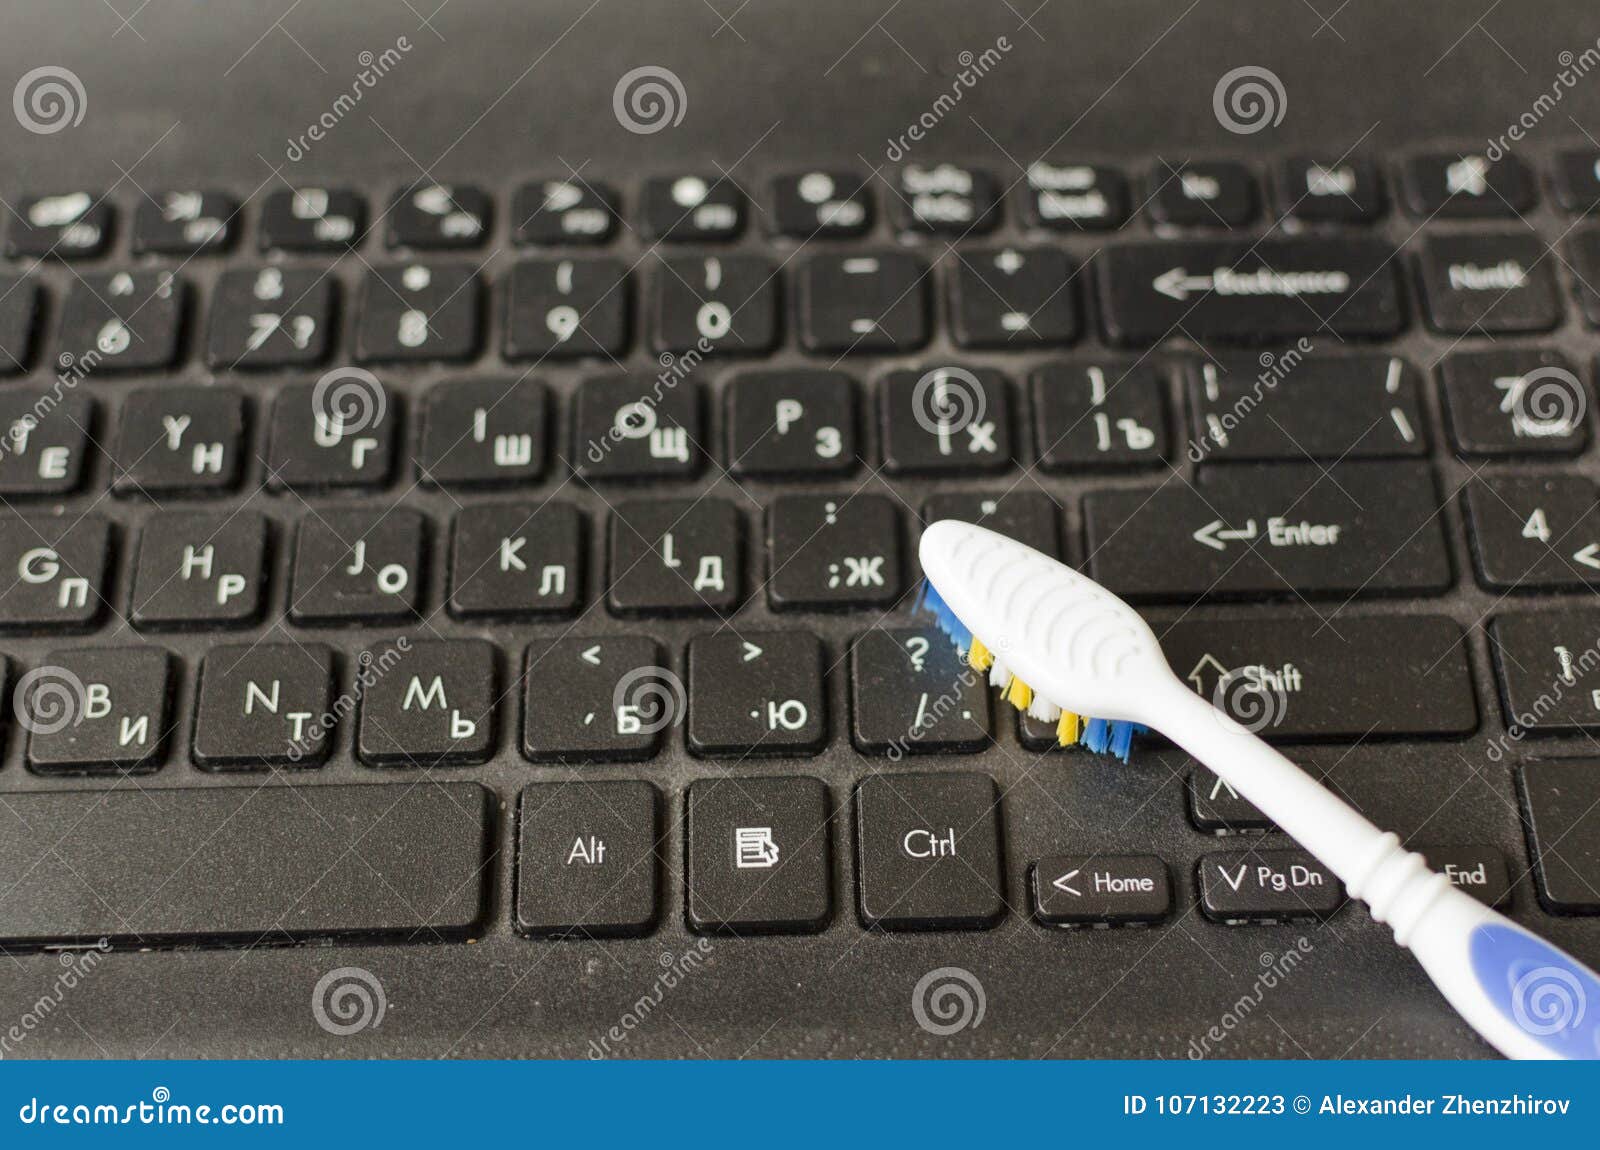 De Vuil Laptop Toetsenbord is Aan Het Schoonmaken Stock Afbeelding - Image of stof: 107132223